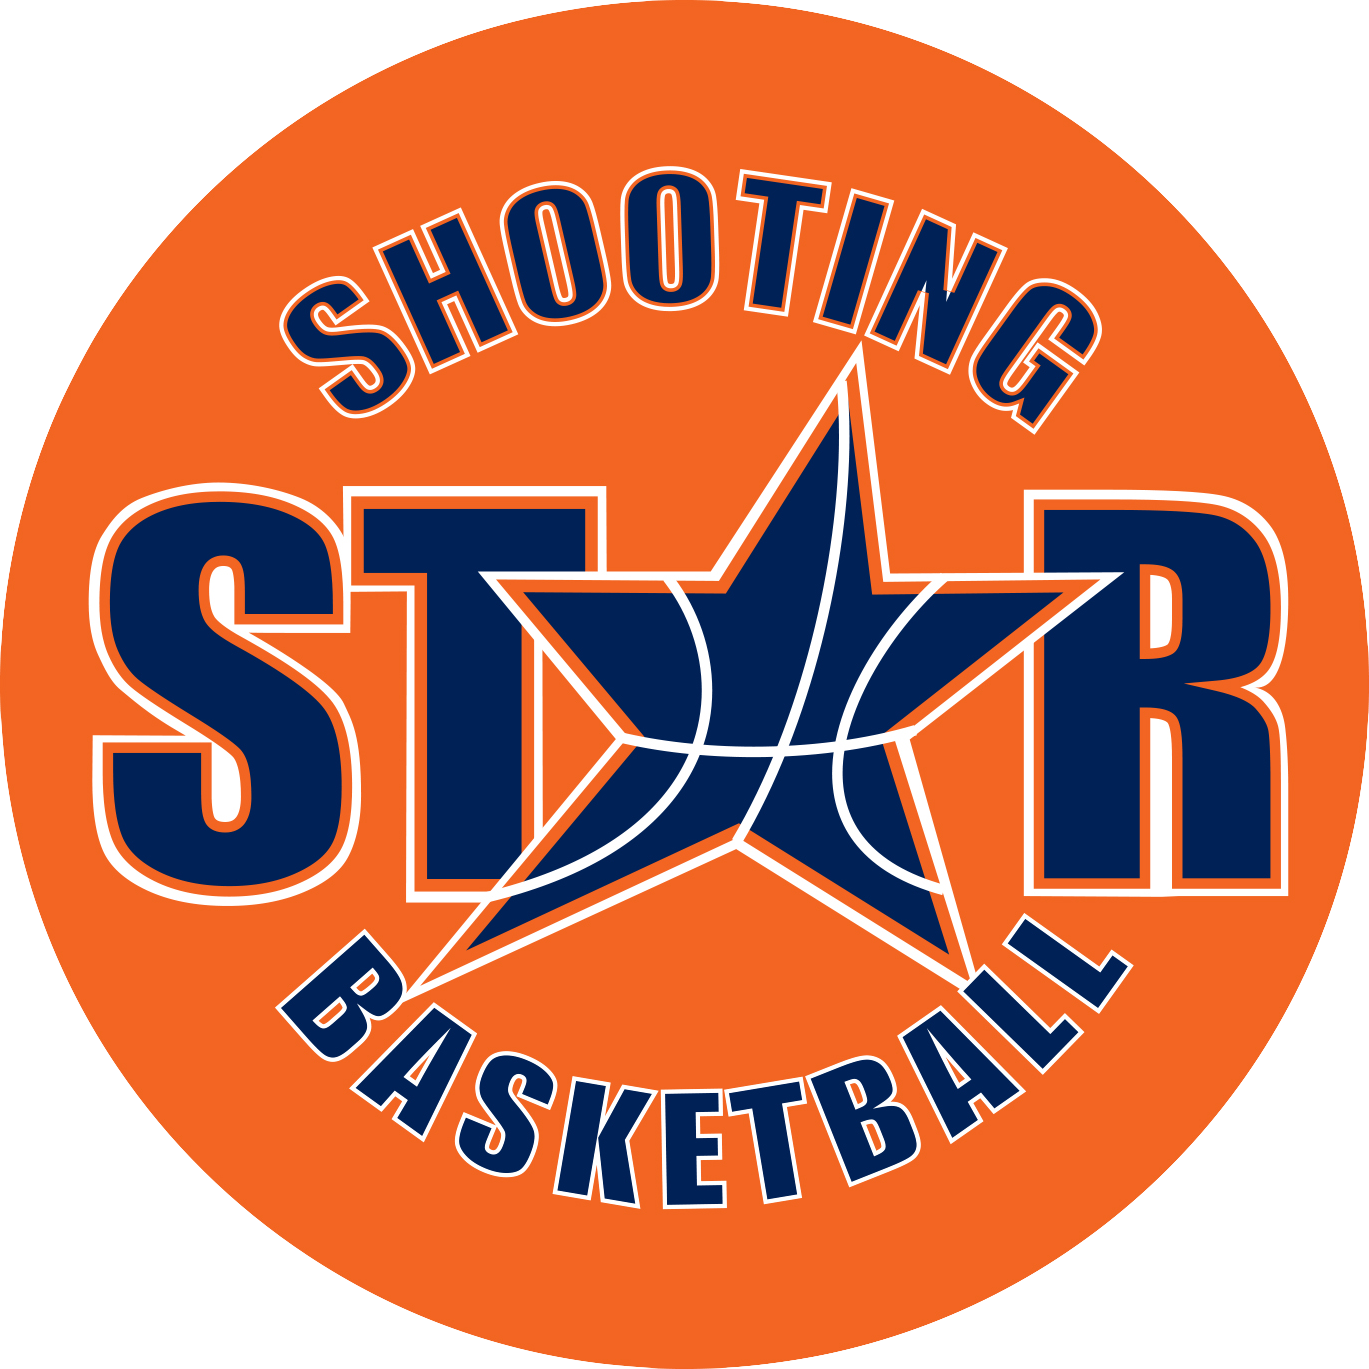 Shooting Star Basketball